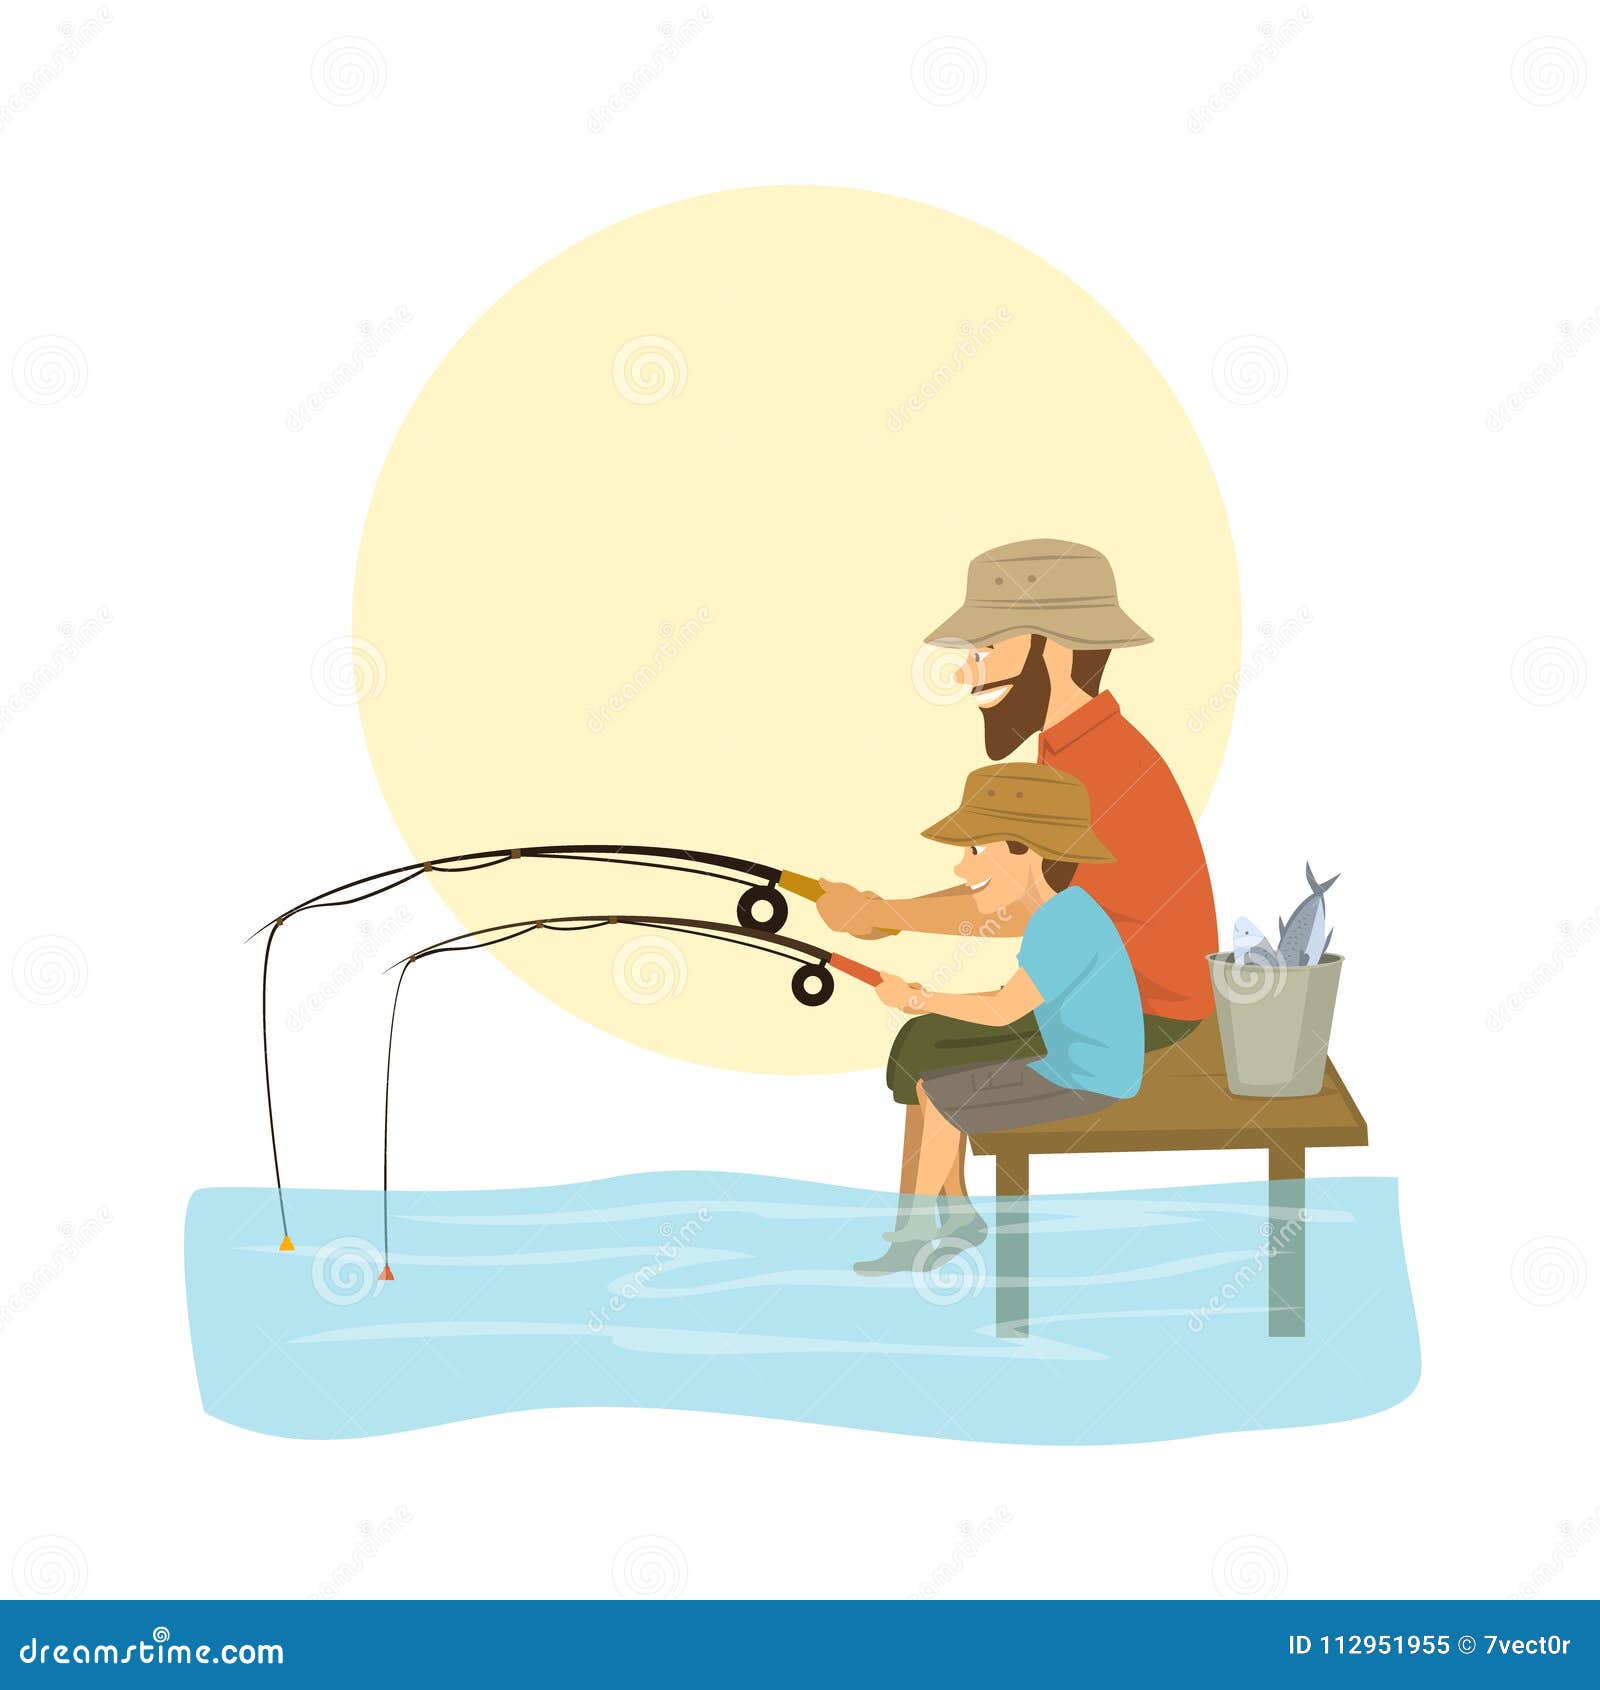 Boy Dad Fishing Stock Illustrations – 428 Boy Dad Fishing Stock  Illustrations, Vectors & Clipart - Dreamstime